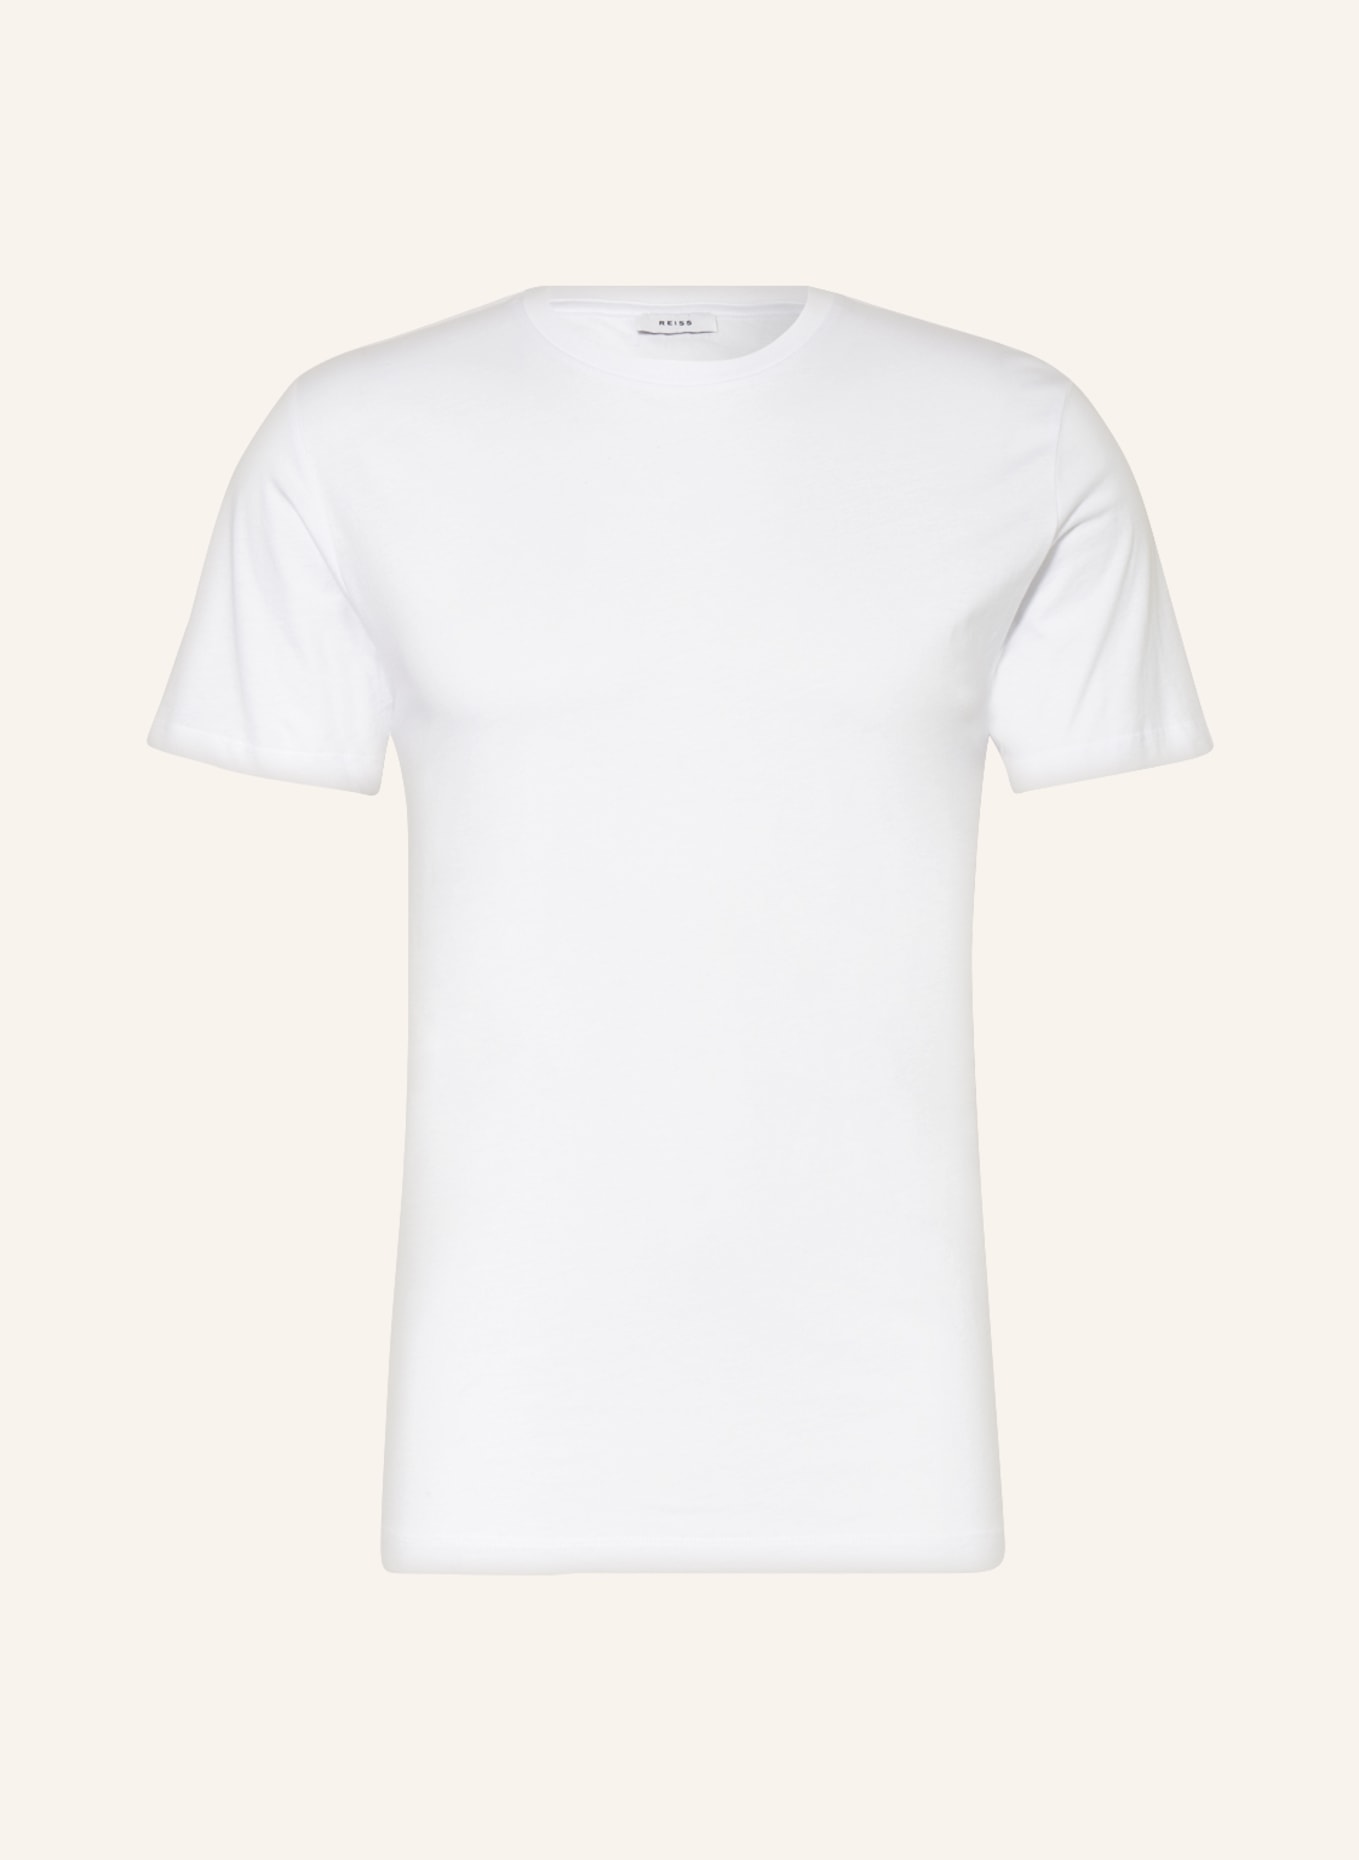 REISS 3er-Pack T-Shirts BLESS, Farbe: WEISS (Bild 1)